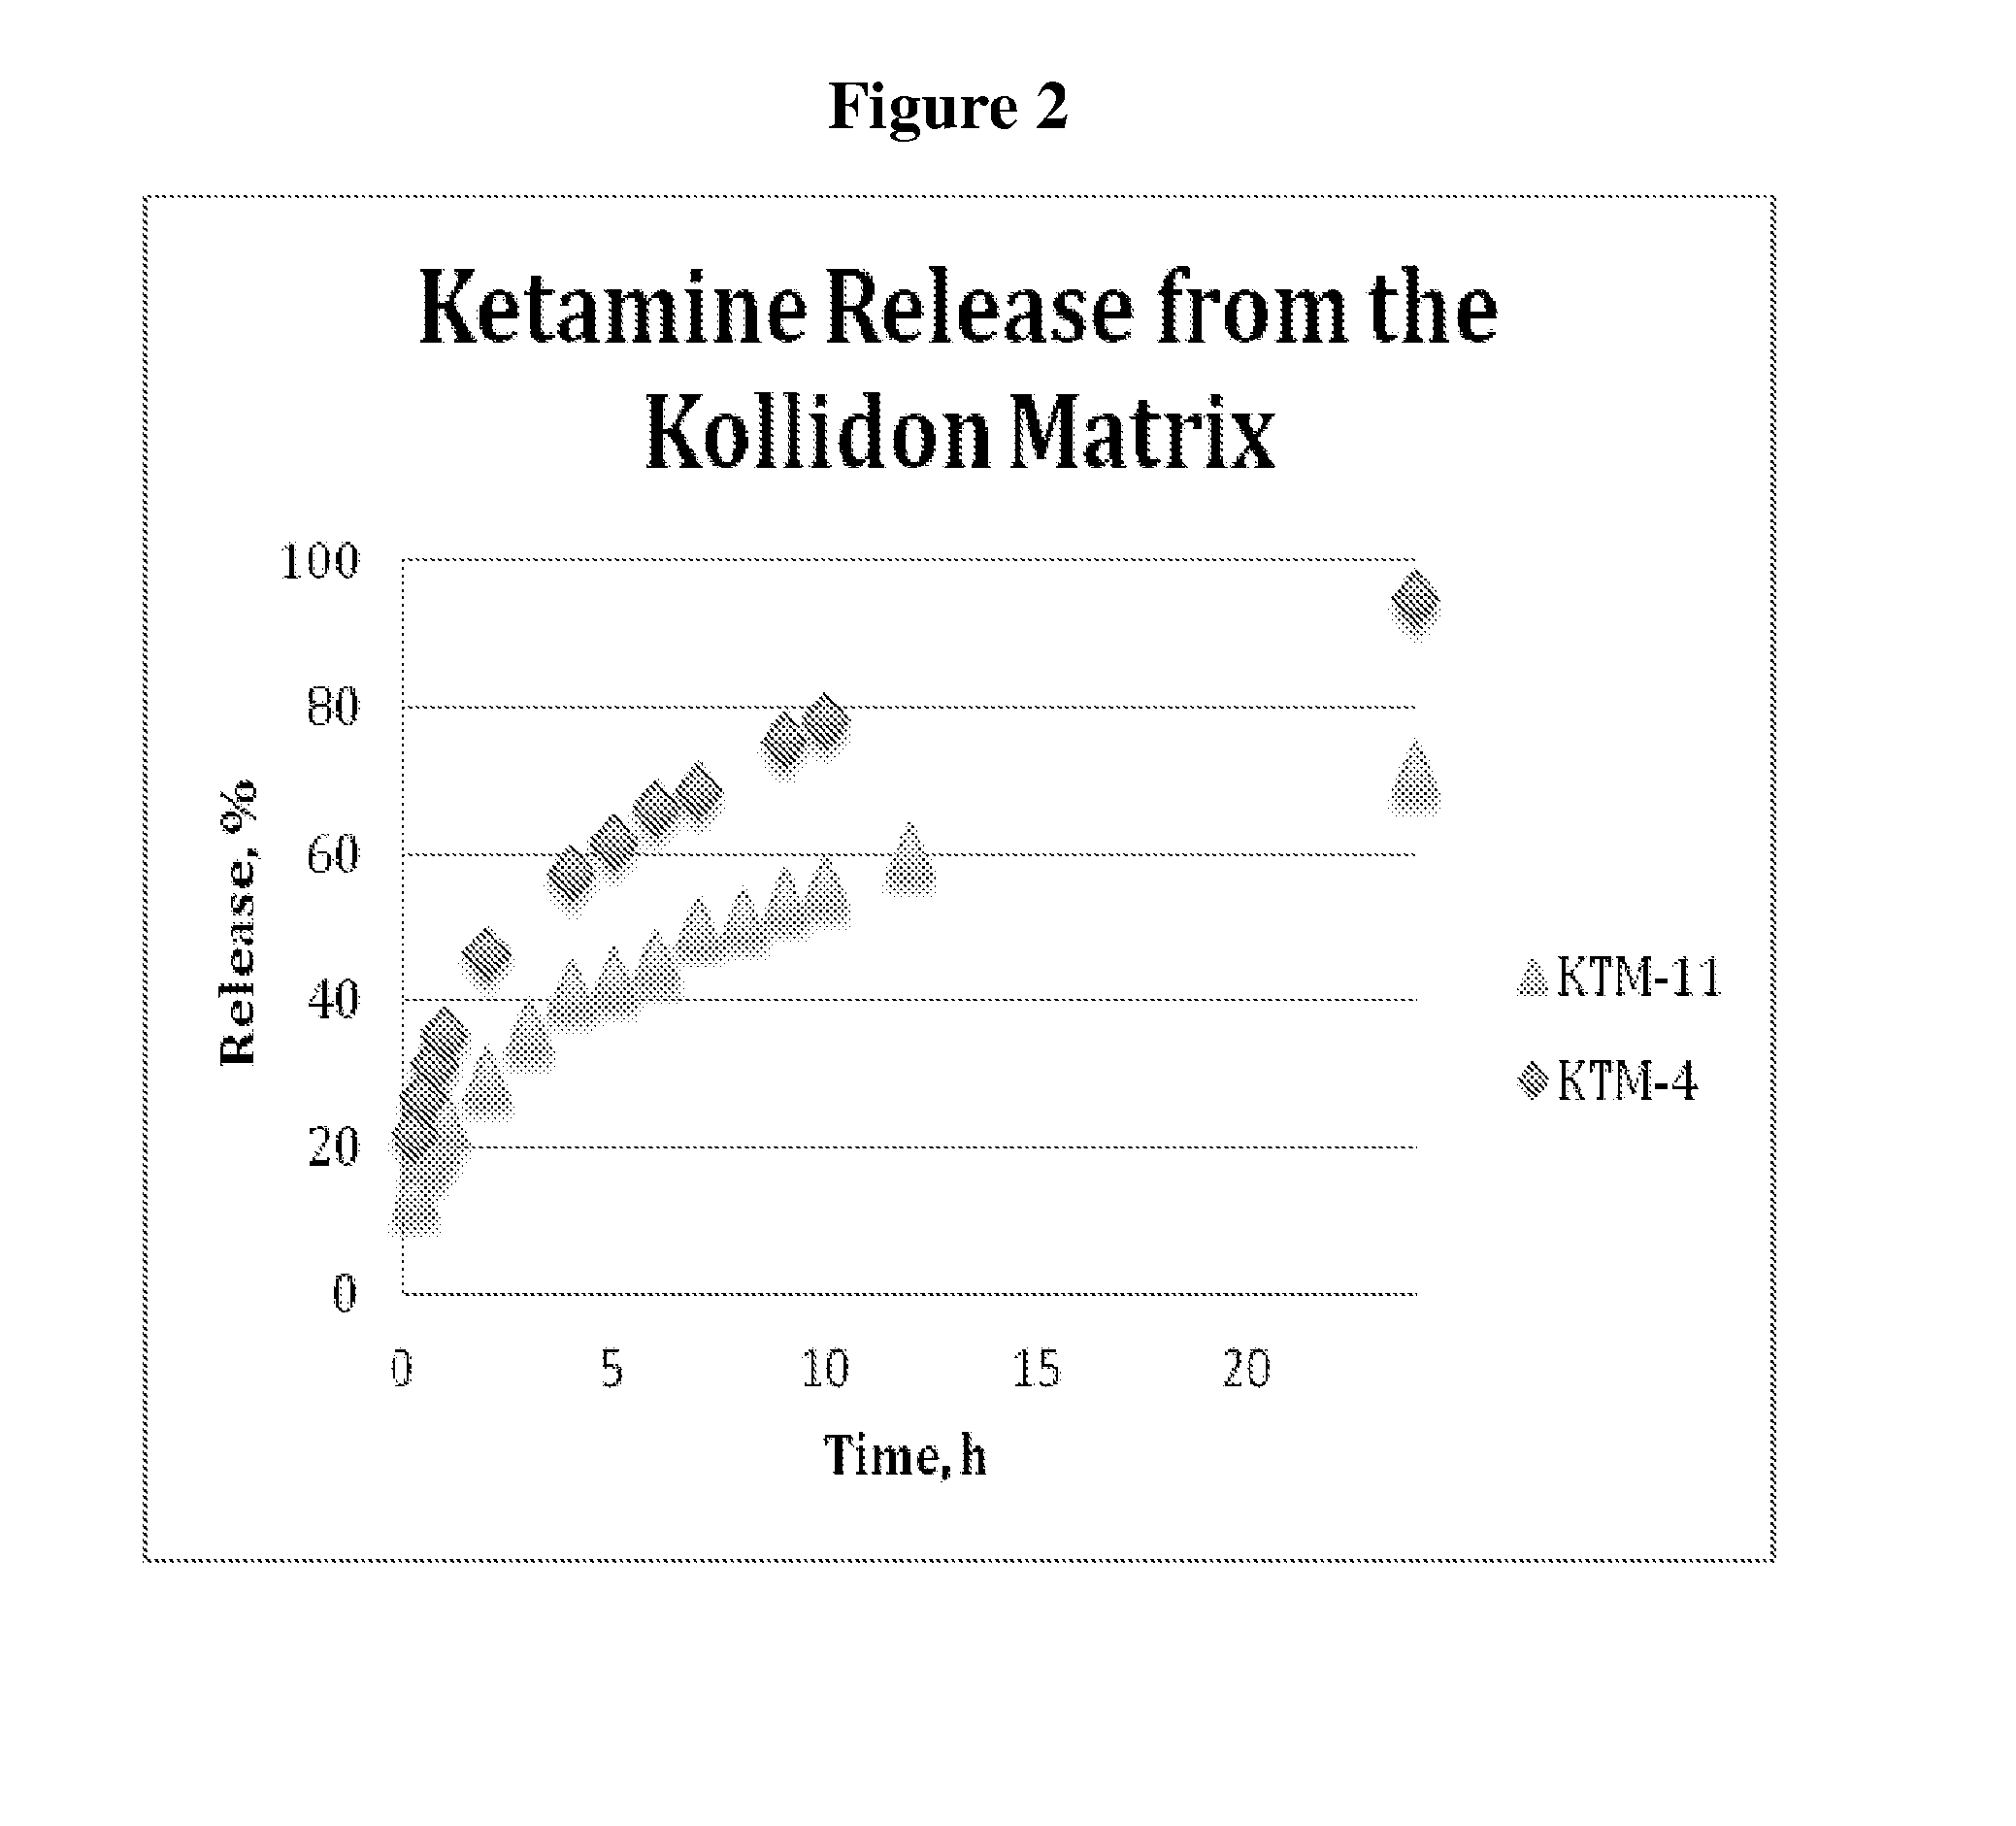 Single-layer oral dose of neuro-attenuating ketamine